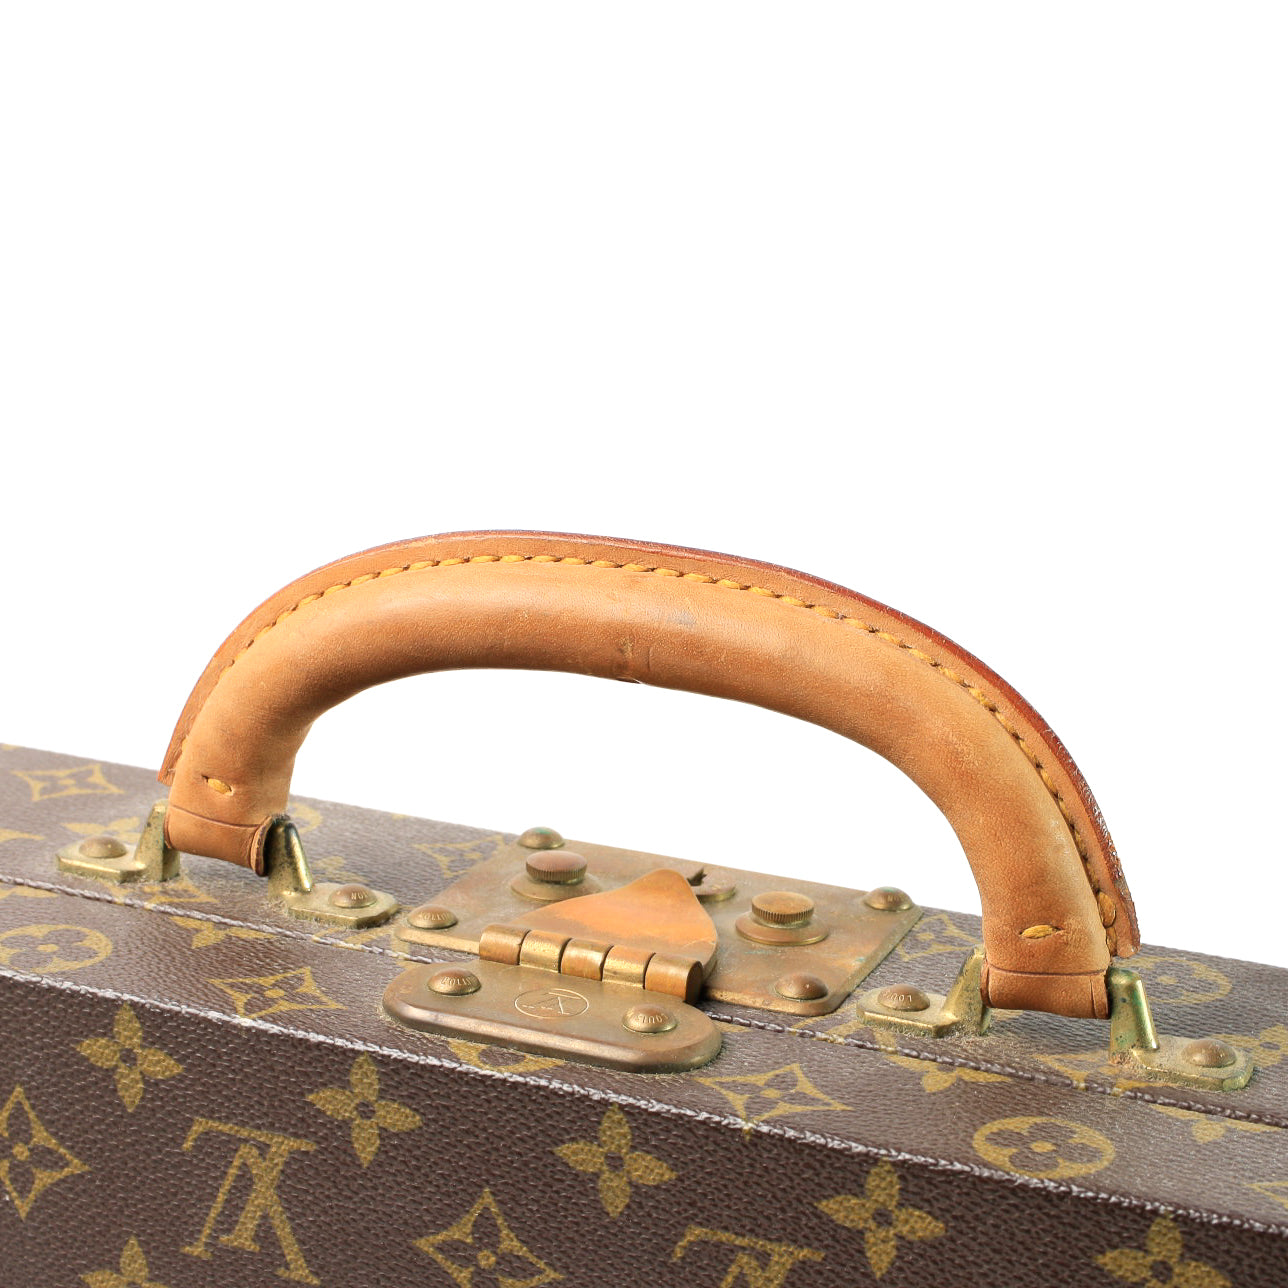 Vintage Louis Vuitton Jewellery Case Trunk Boite Bijoux M4710